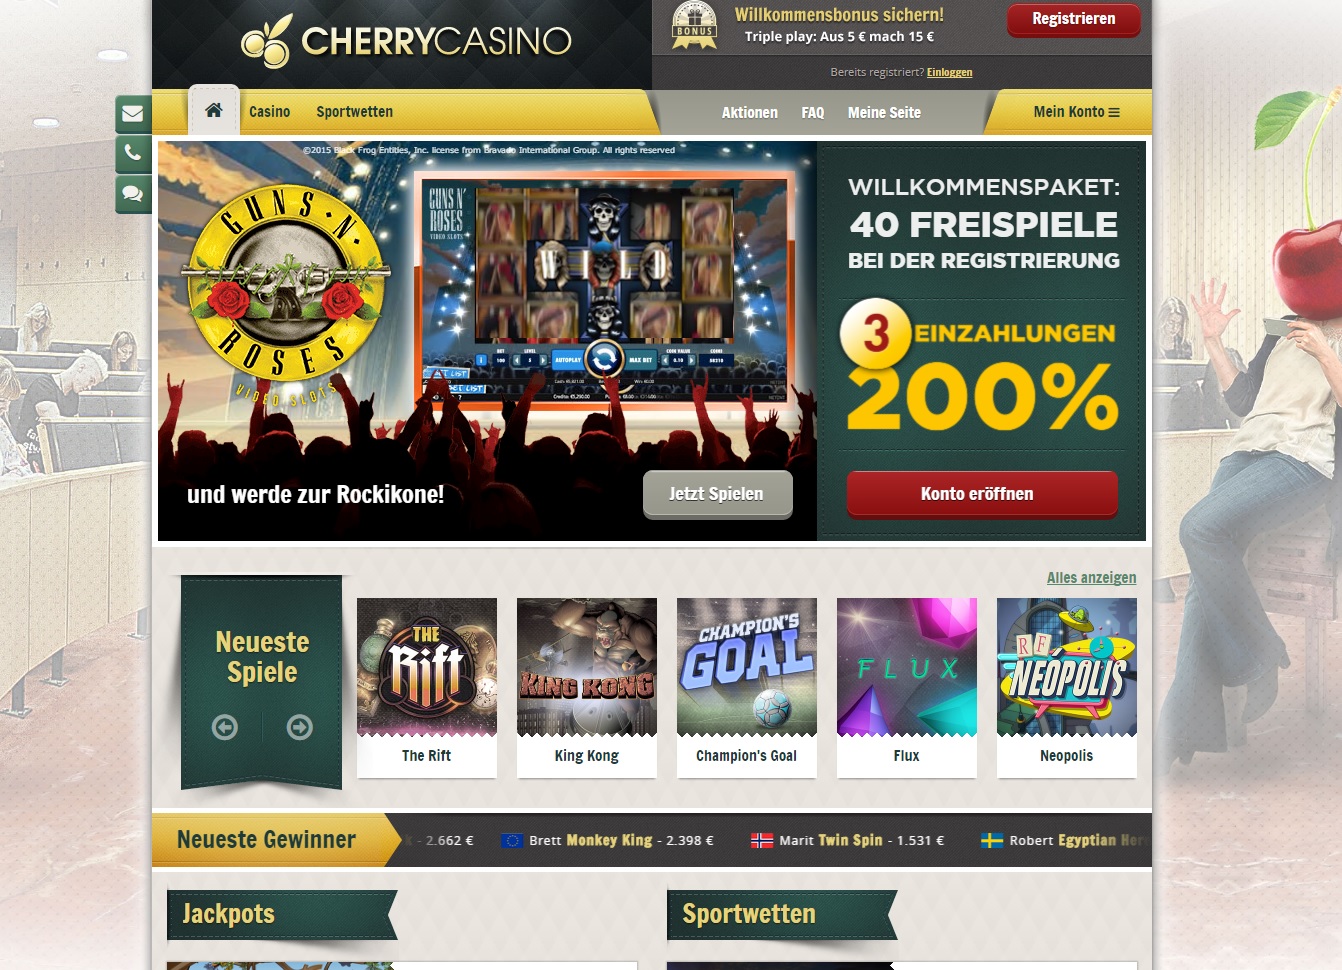 Neue Online Casino Bonus Ohne Einzahlung 2021